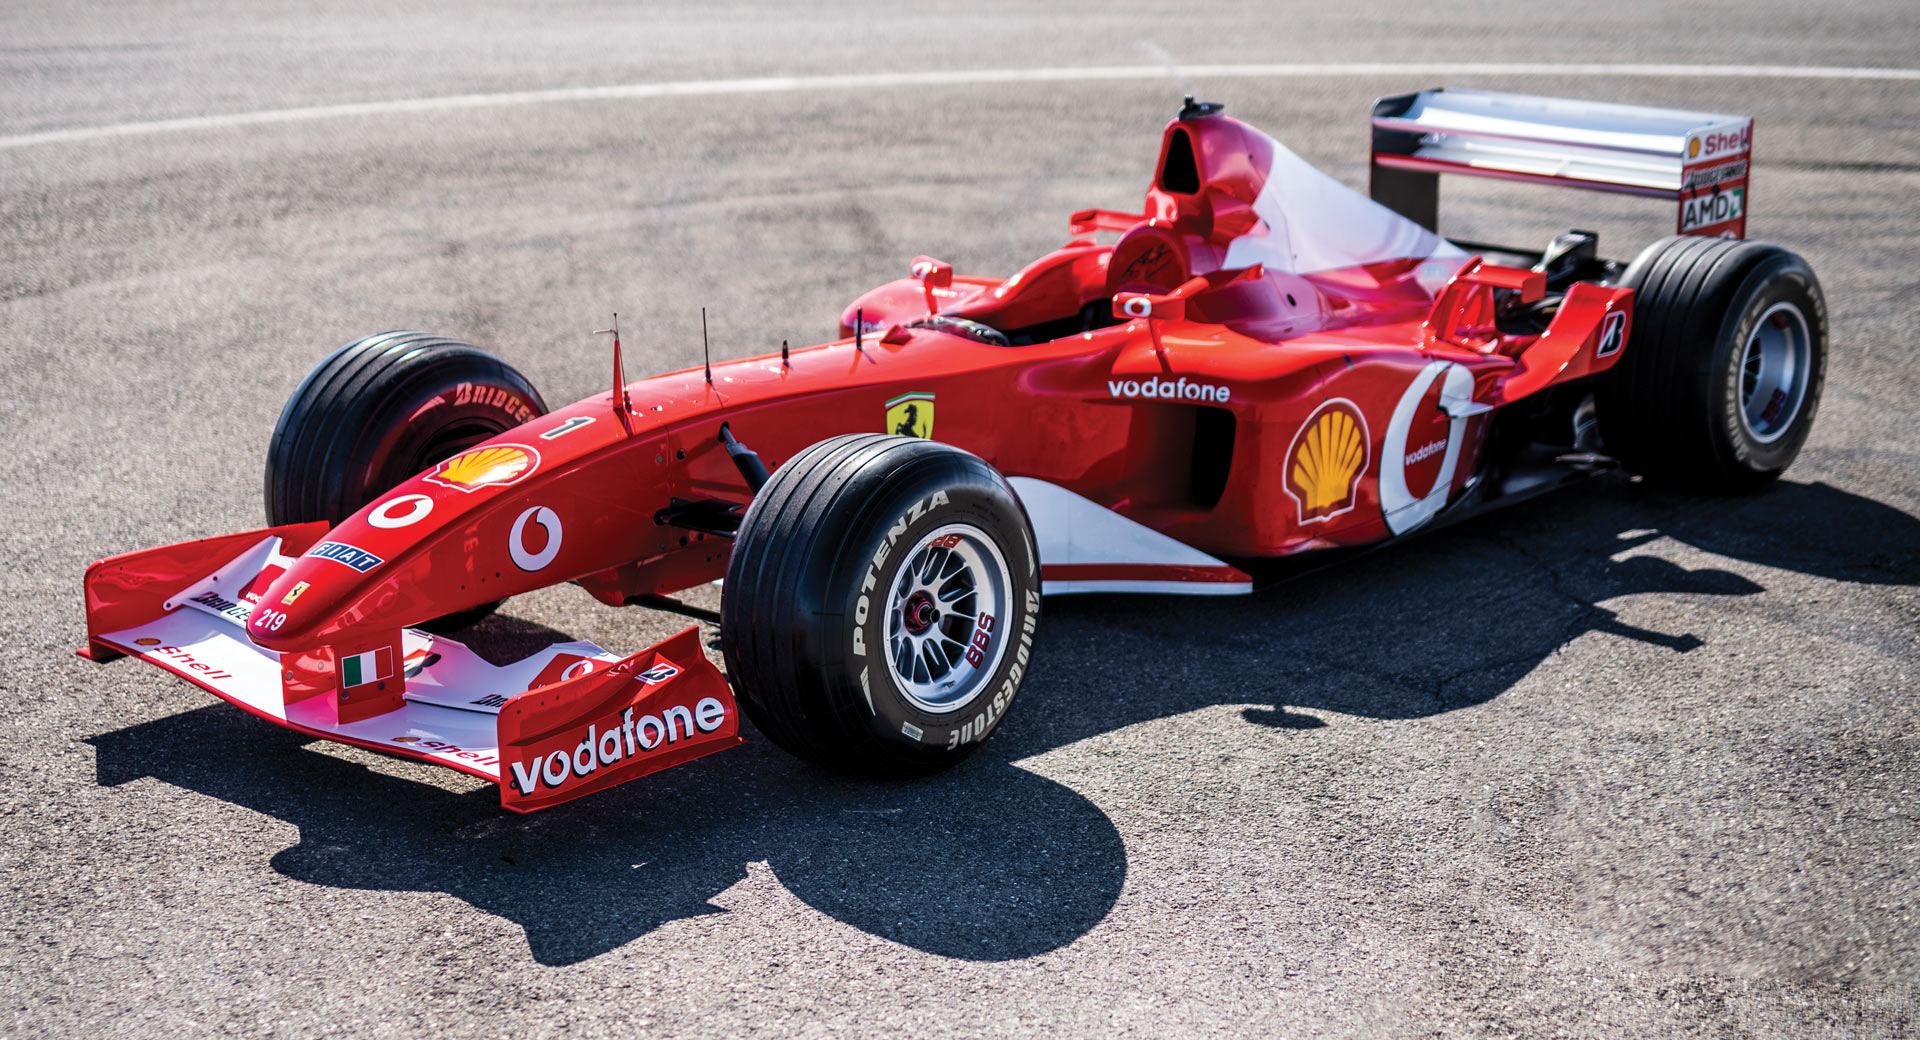 Ferrari-F2002-111